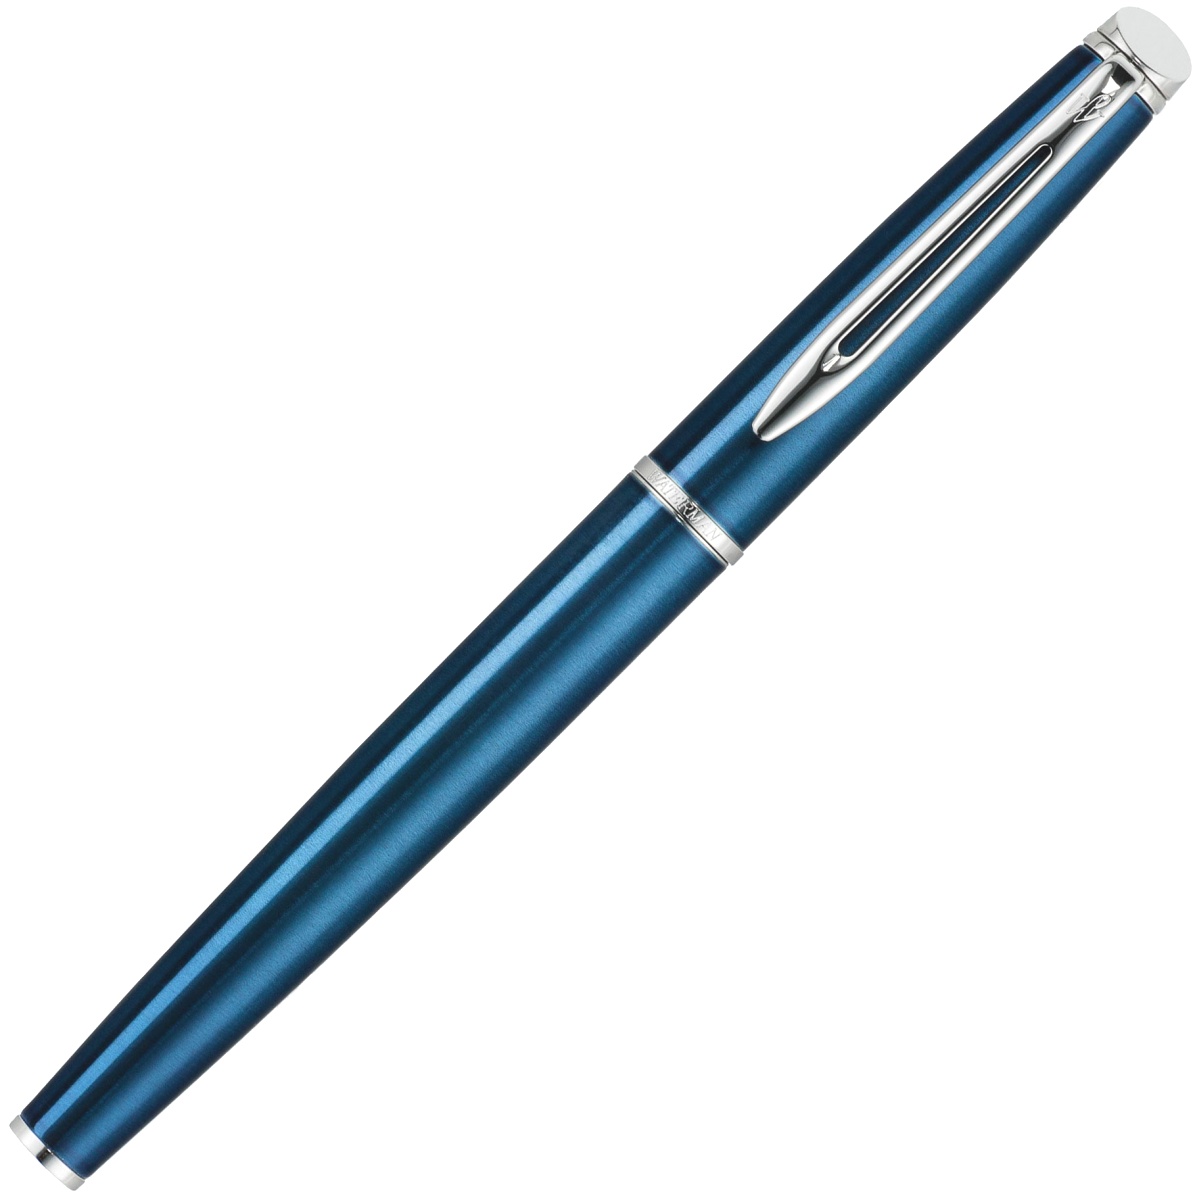 Перьевая ручка Waterman Hemisphere, Metallic Blue CT (Перо M), фото 2